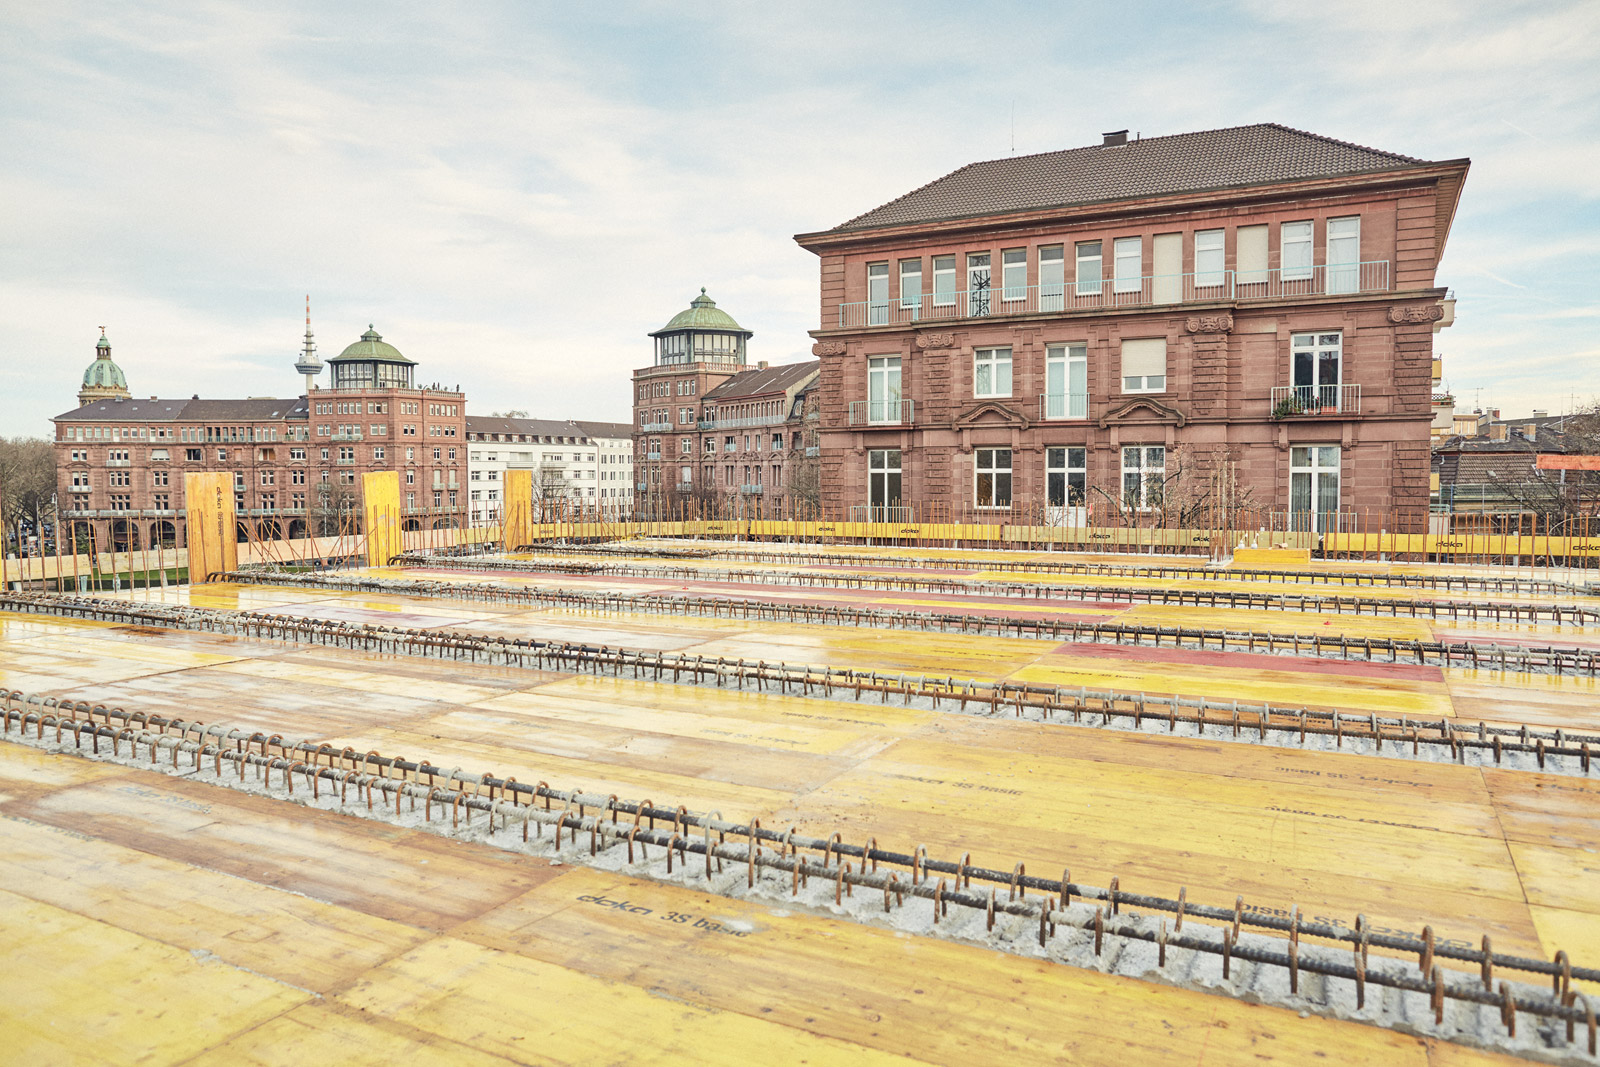  Dach mit Blick zum Friedrichsplatz  2015–12–22        